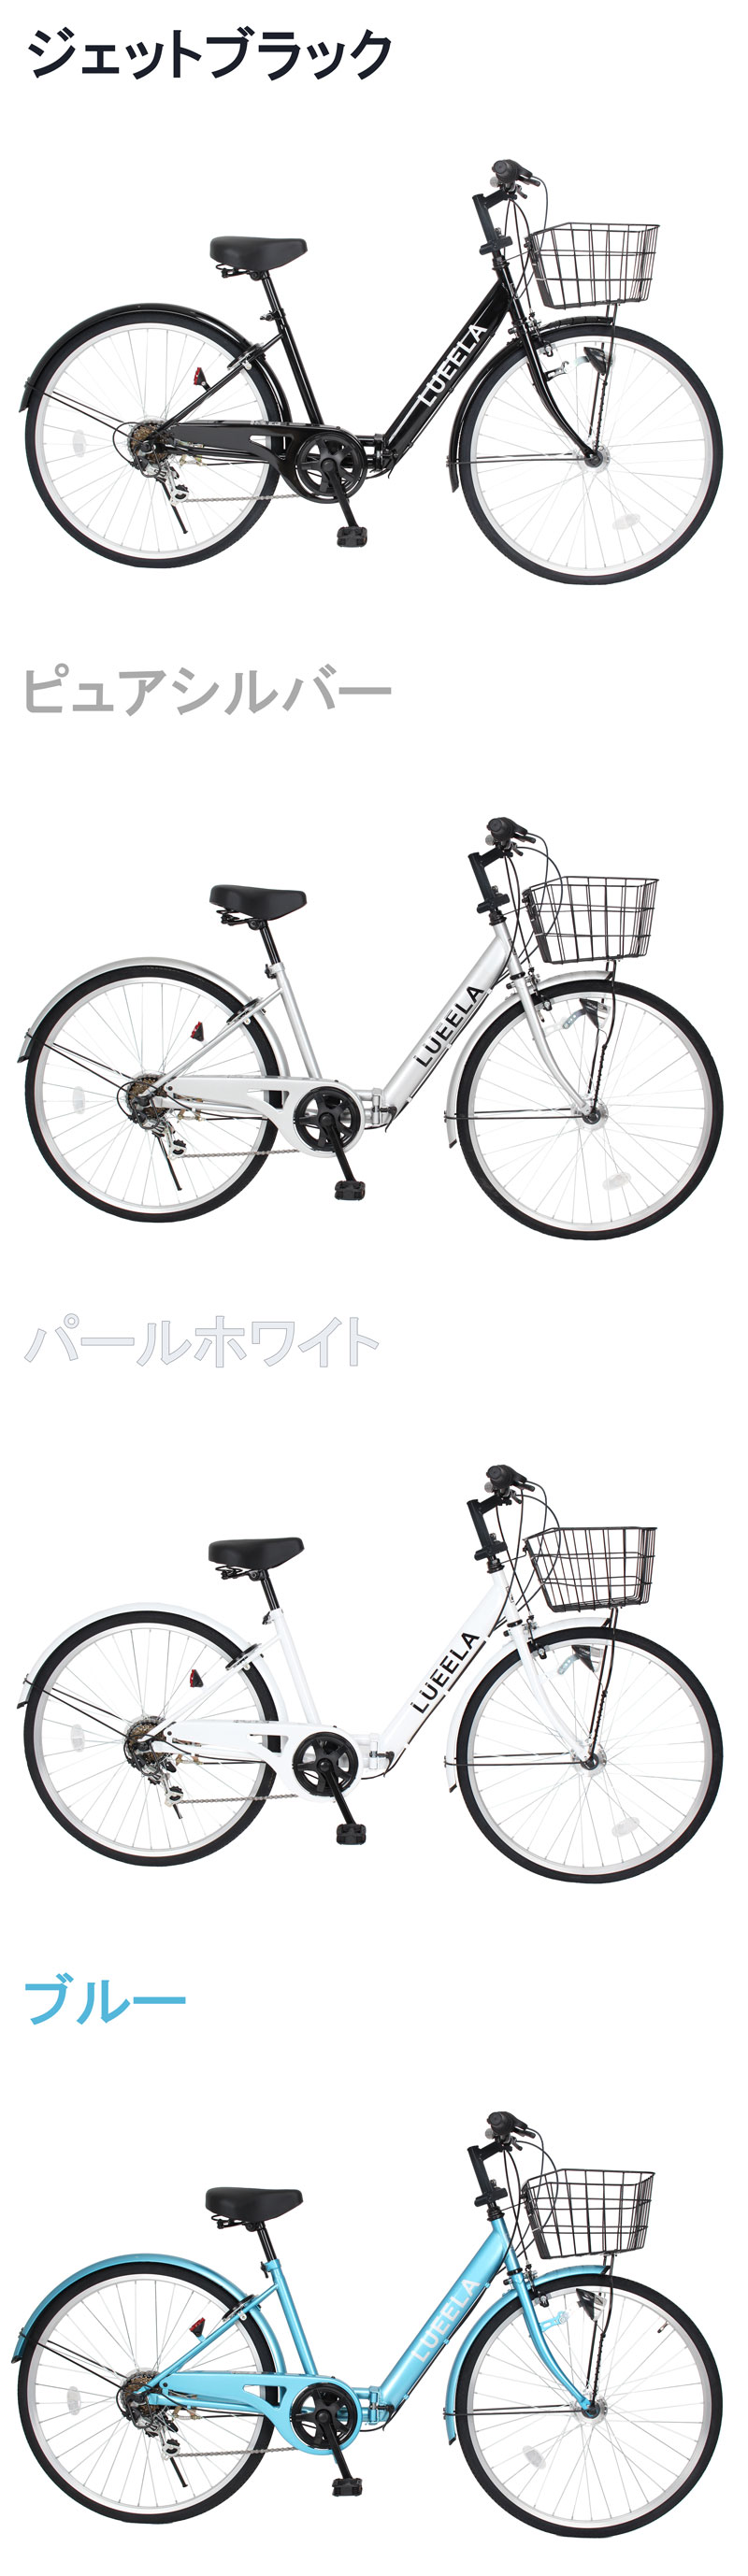 ママチャリ シティサイクル 完成車 組立不要 26インチ 自転車 シマノ製 